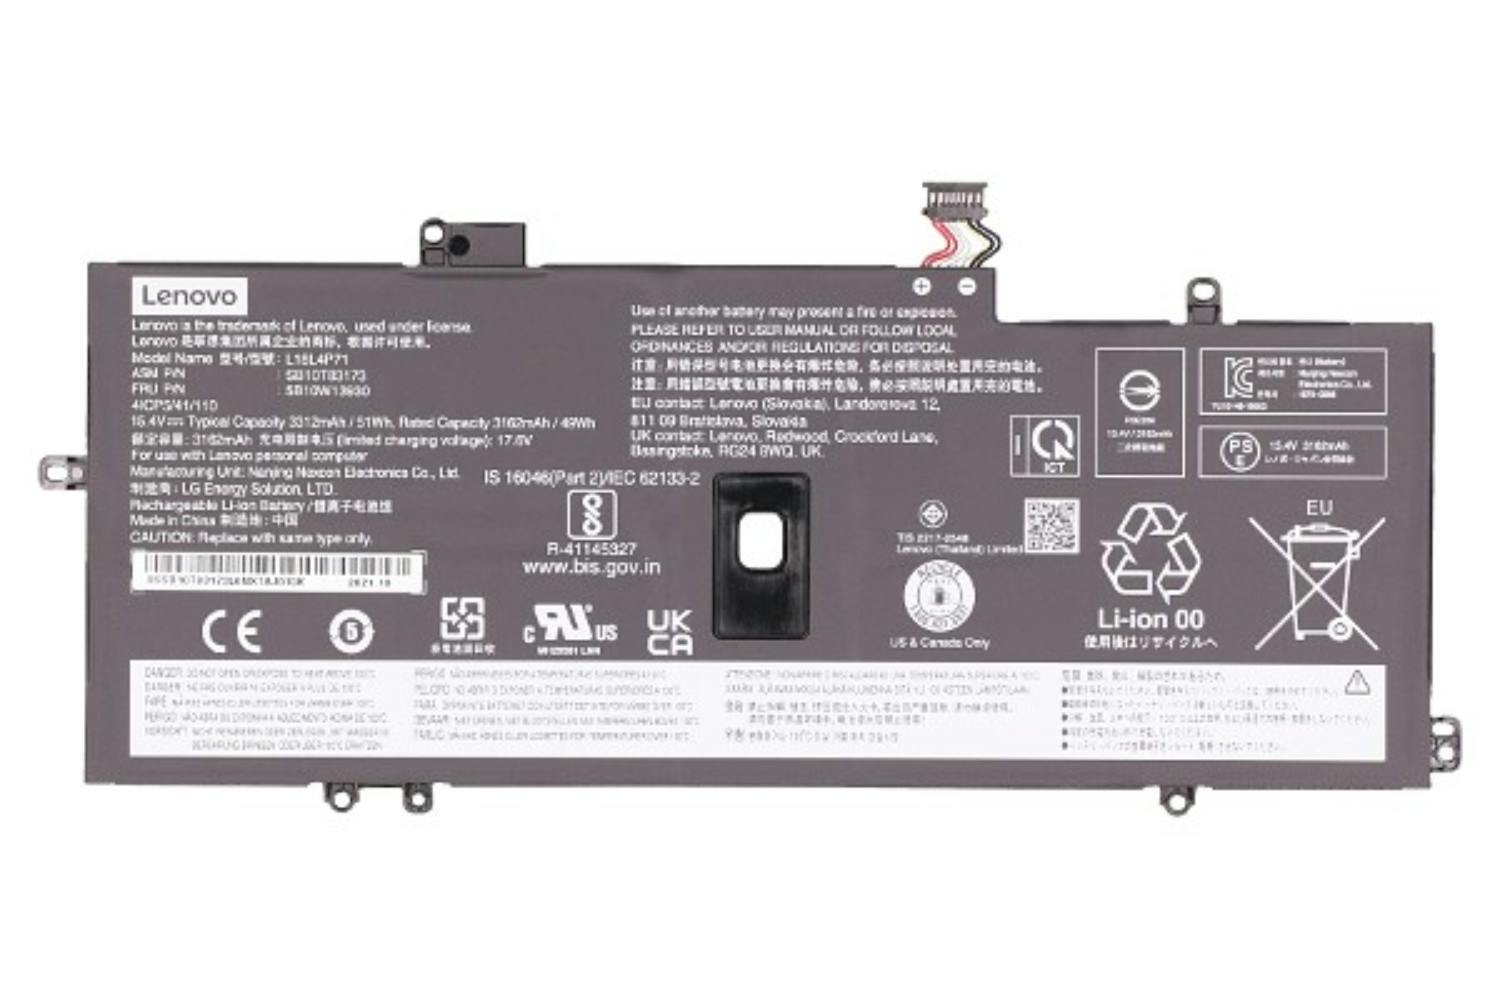 Lenovo 02DL004 3312mAh Main Battery Pack